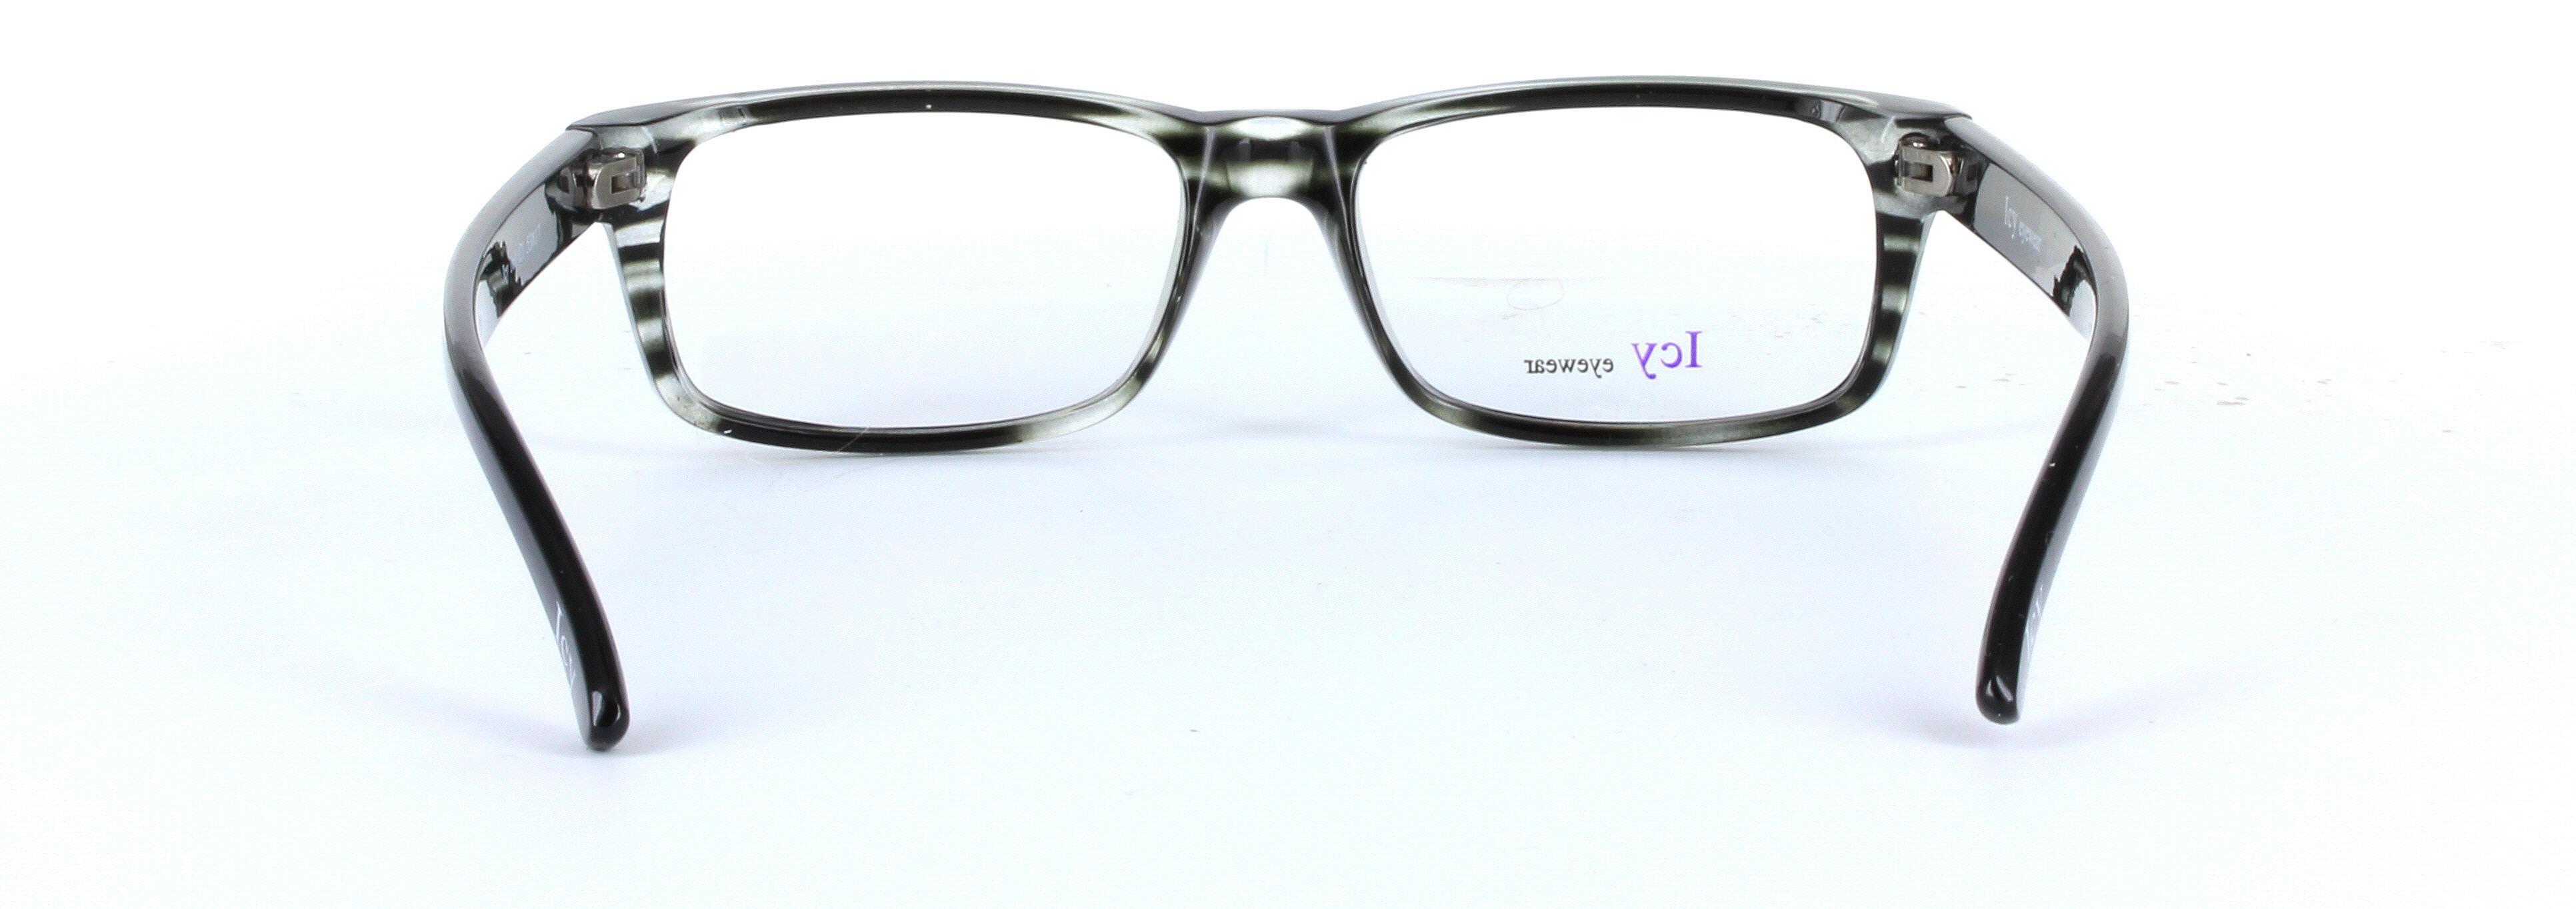 ICY 160 Grey Full Rim Rectangular Square Plastic Glasses - Image View 3